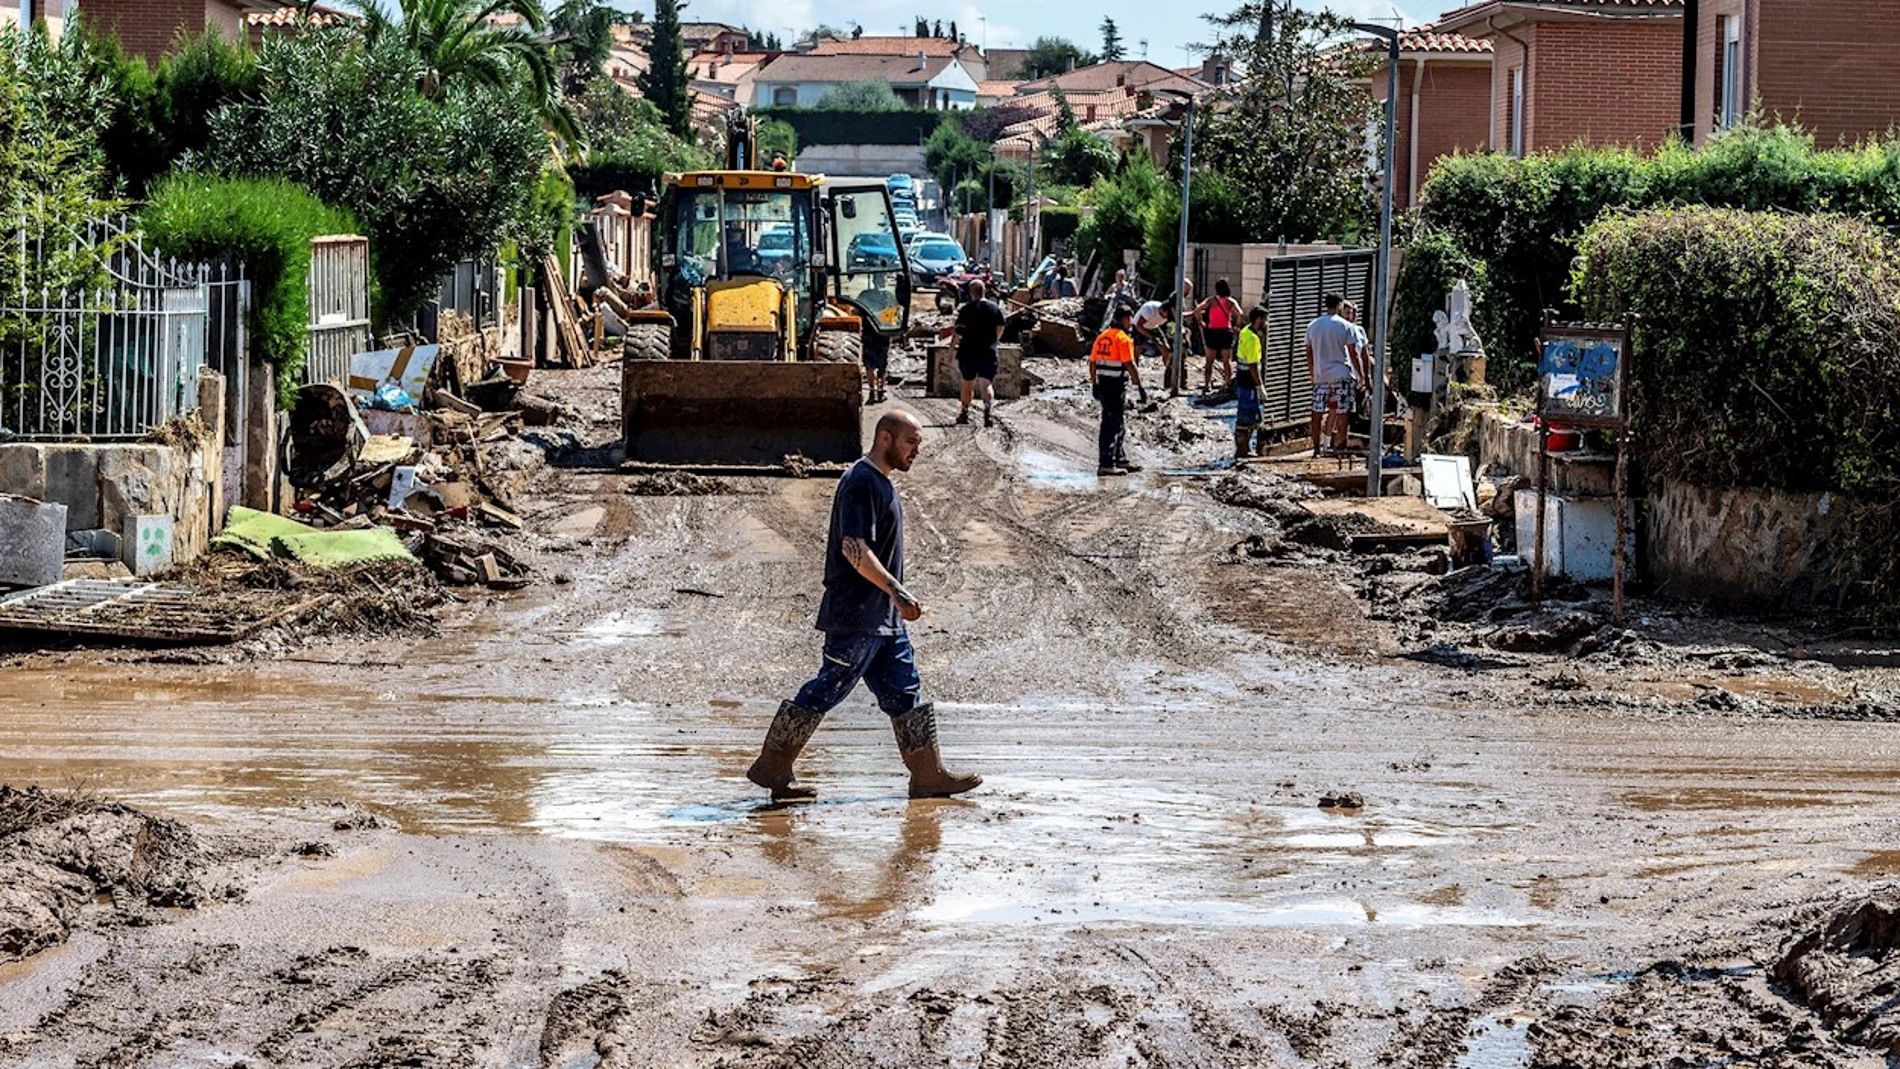 Los vecinos afectados por las inundaciones siguen limpiando sumidos en la desesperación